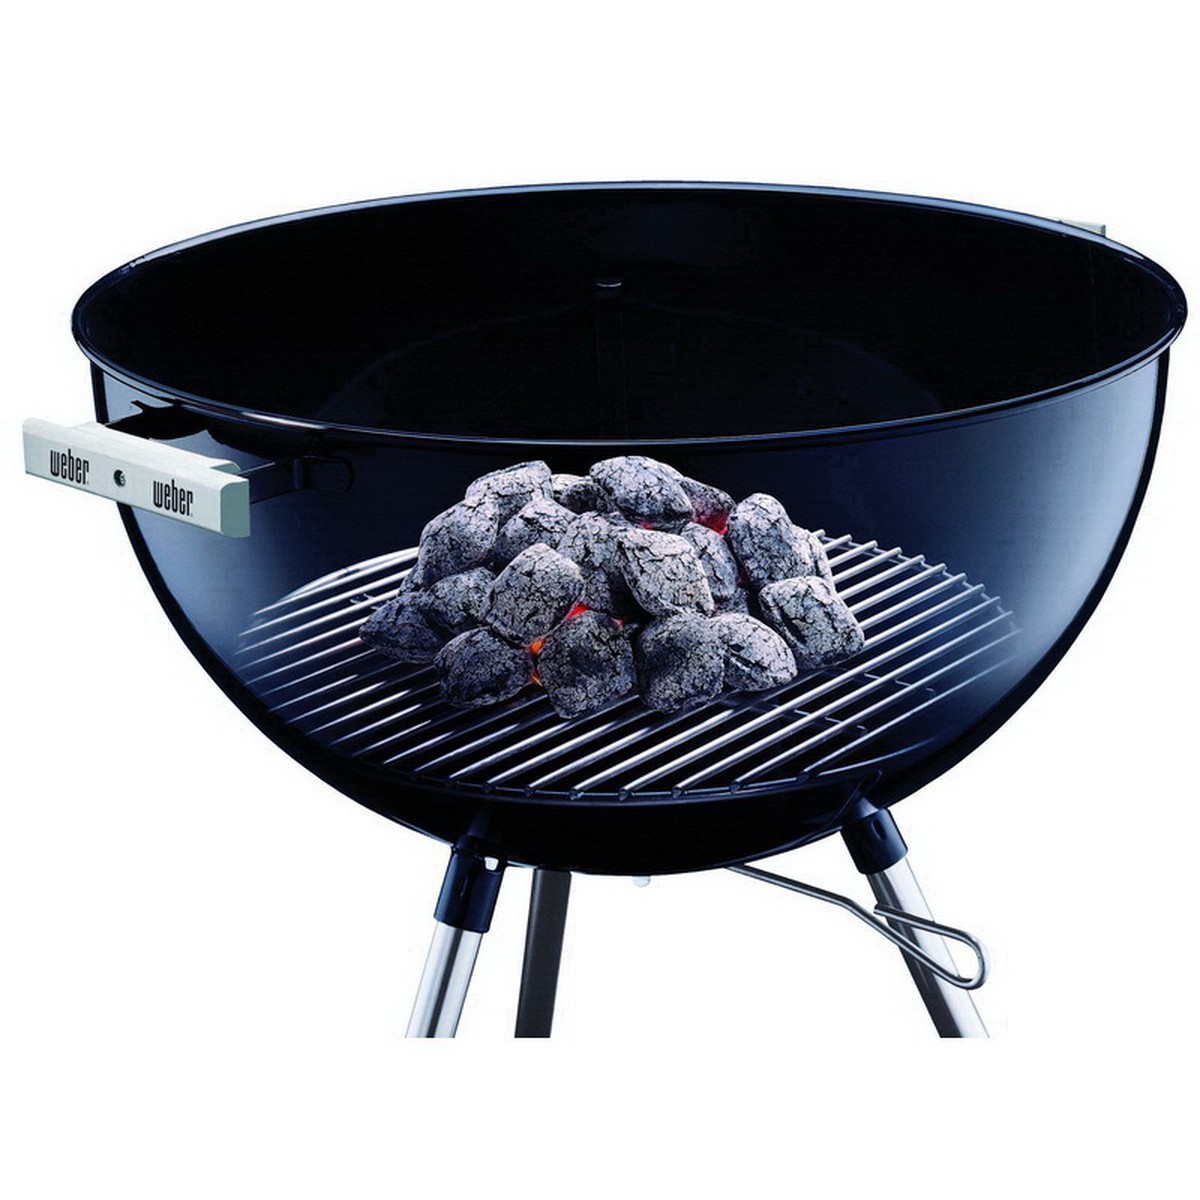 Accessoires, Weber Accessoires barbecues a charbon Grille pour